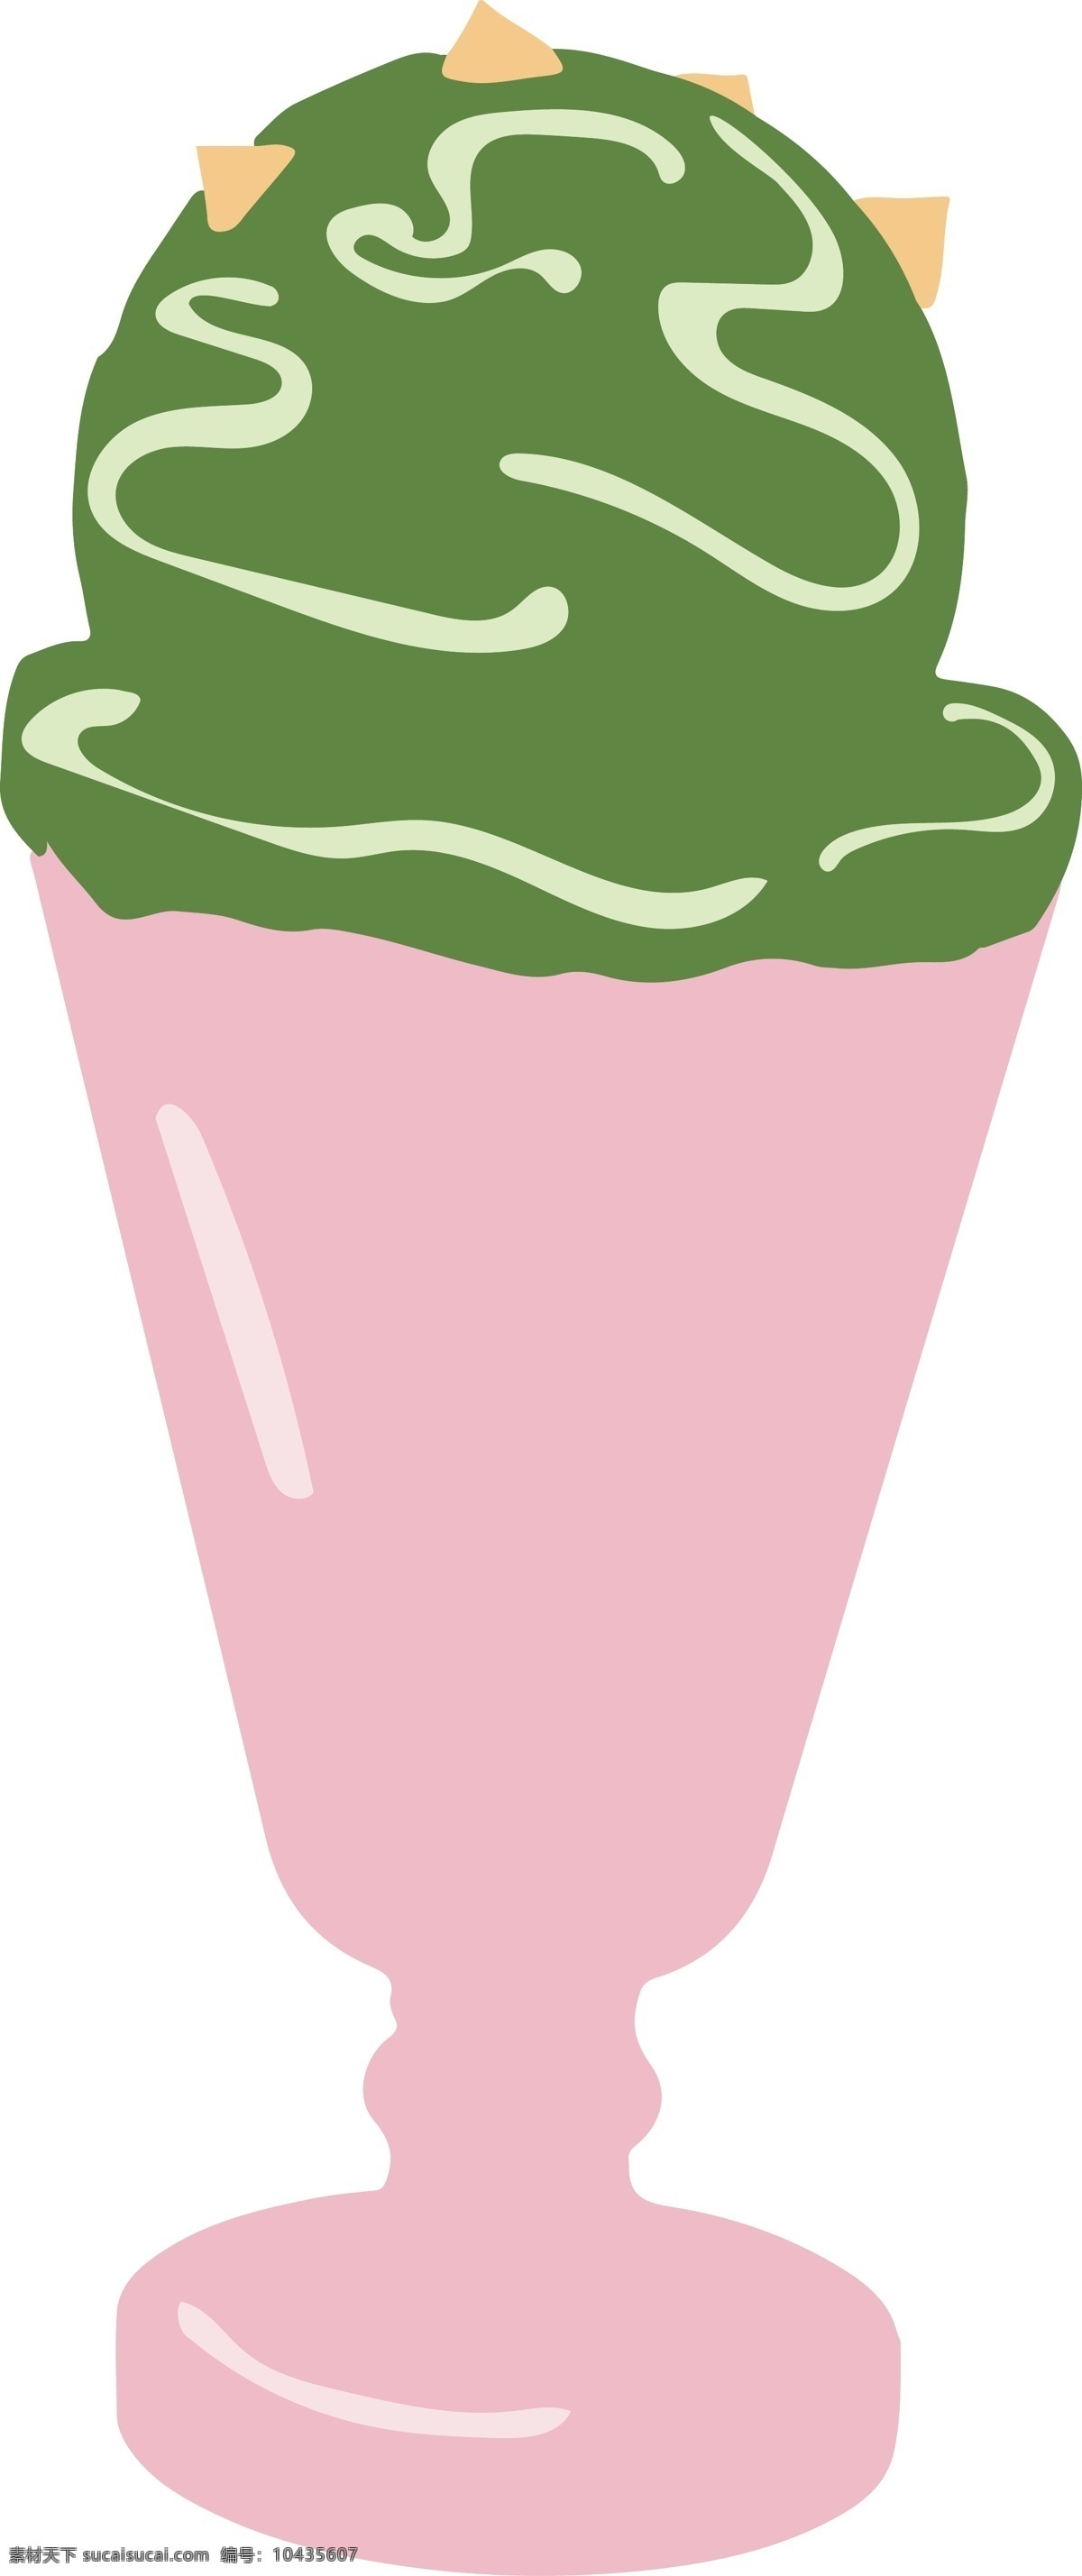 夏日 卡通 冰淇淋 图形 商用 元素 夏日冰淇淋 清凉 食物 解暑 冰淇淋杯子